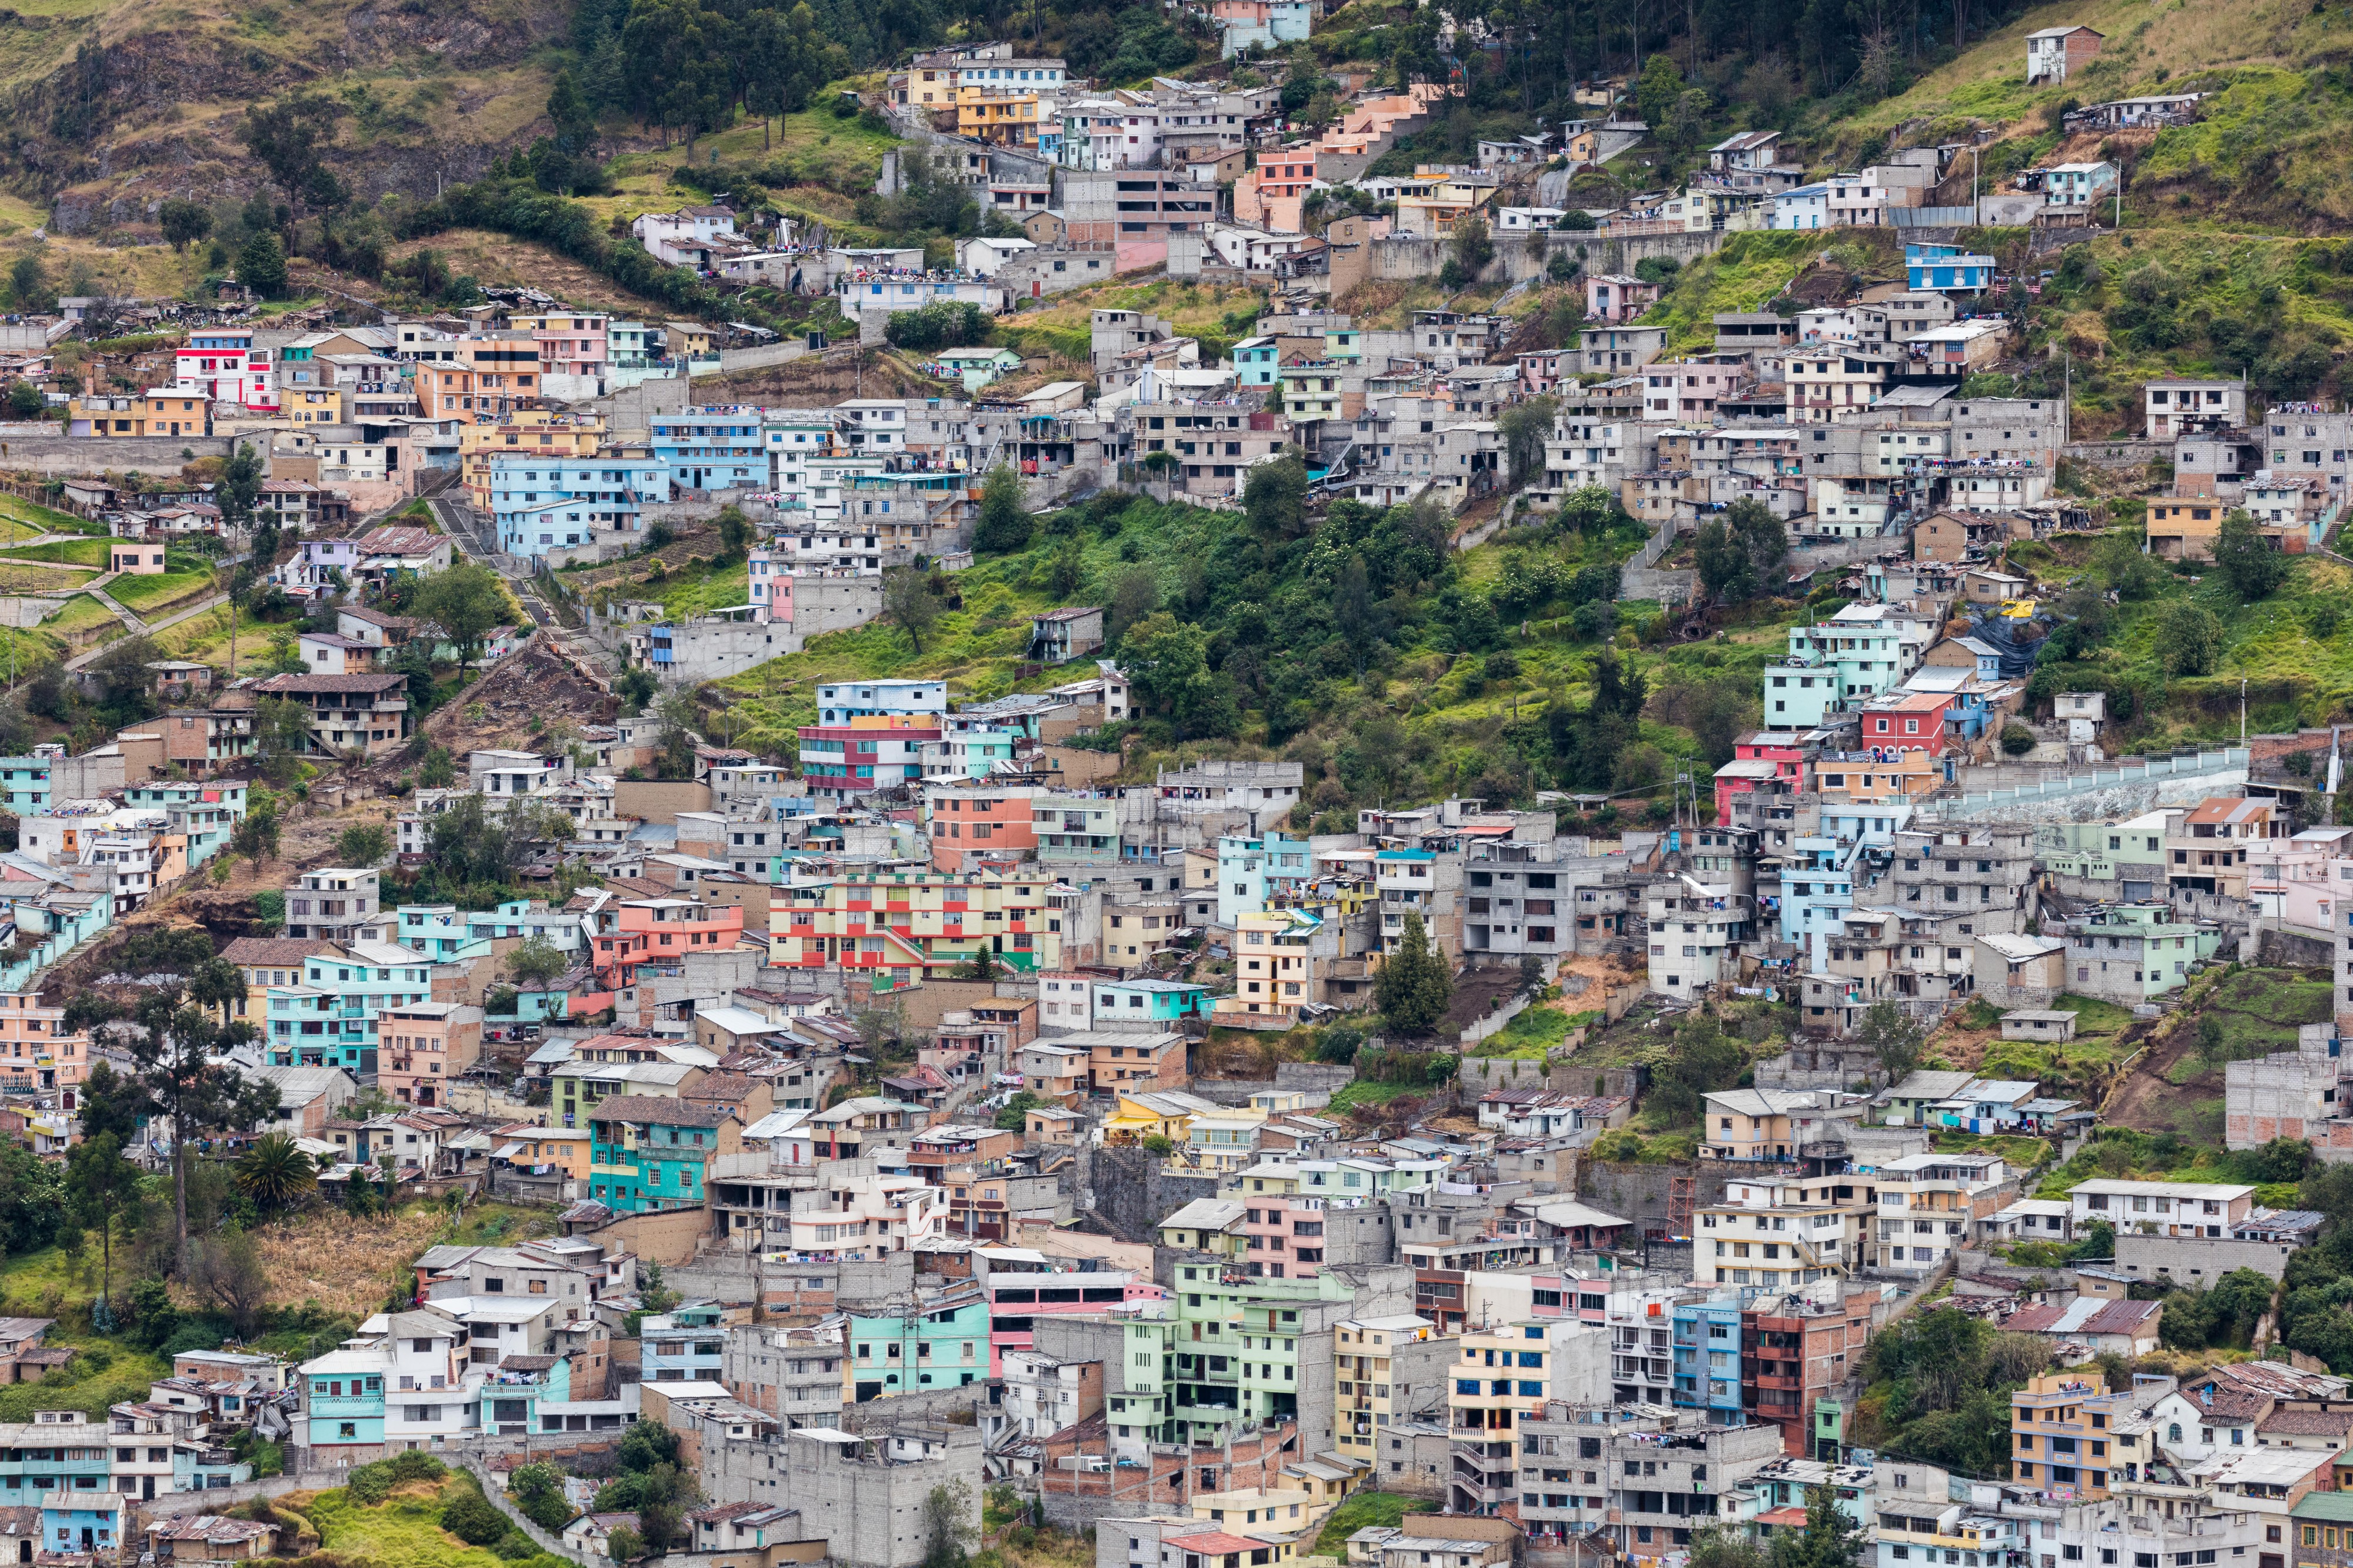 Vista de Quito desde El Panecillo, Ecuador, 2015-07-22, DD 42